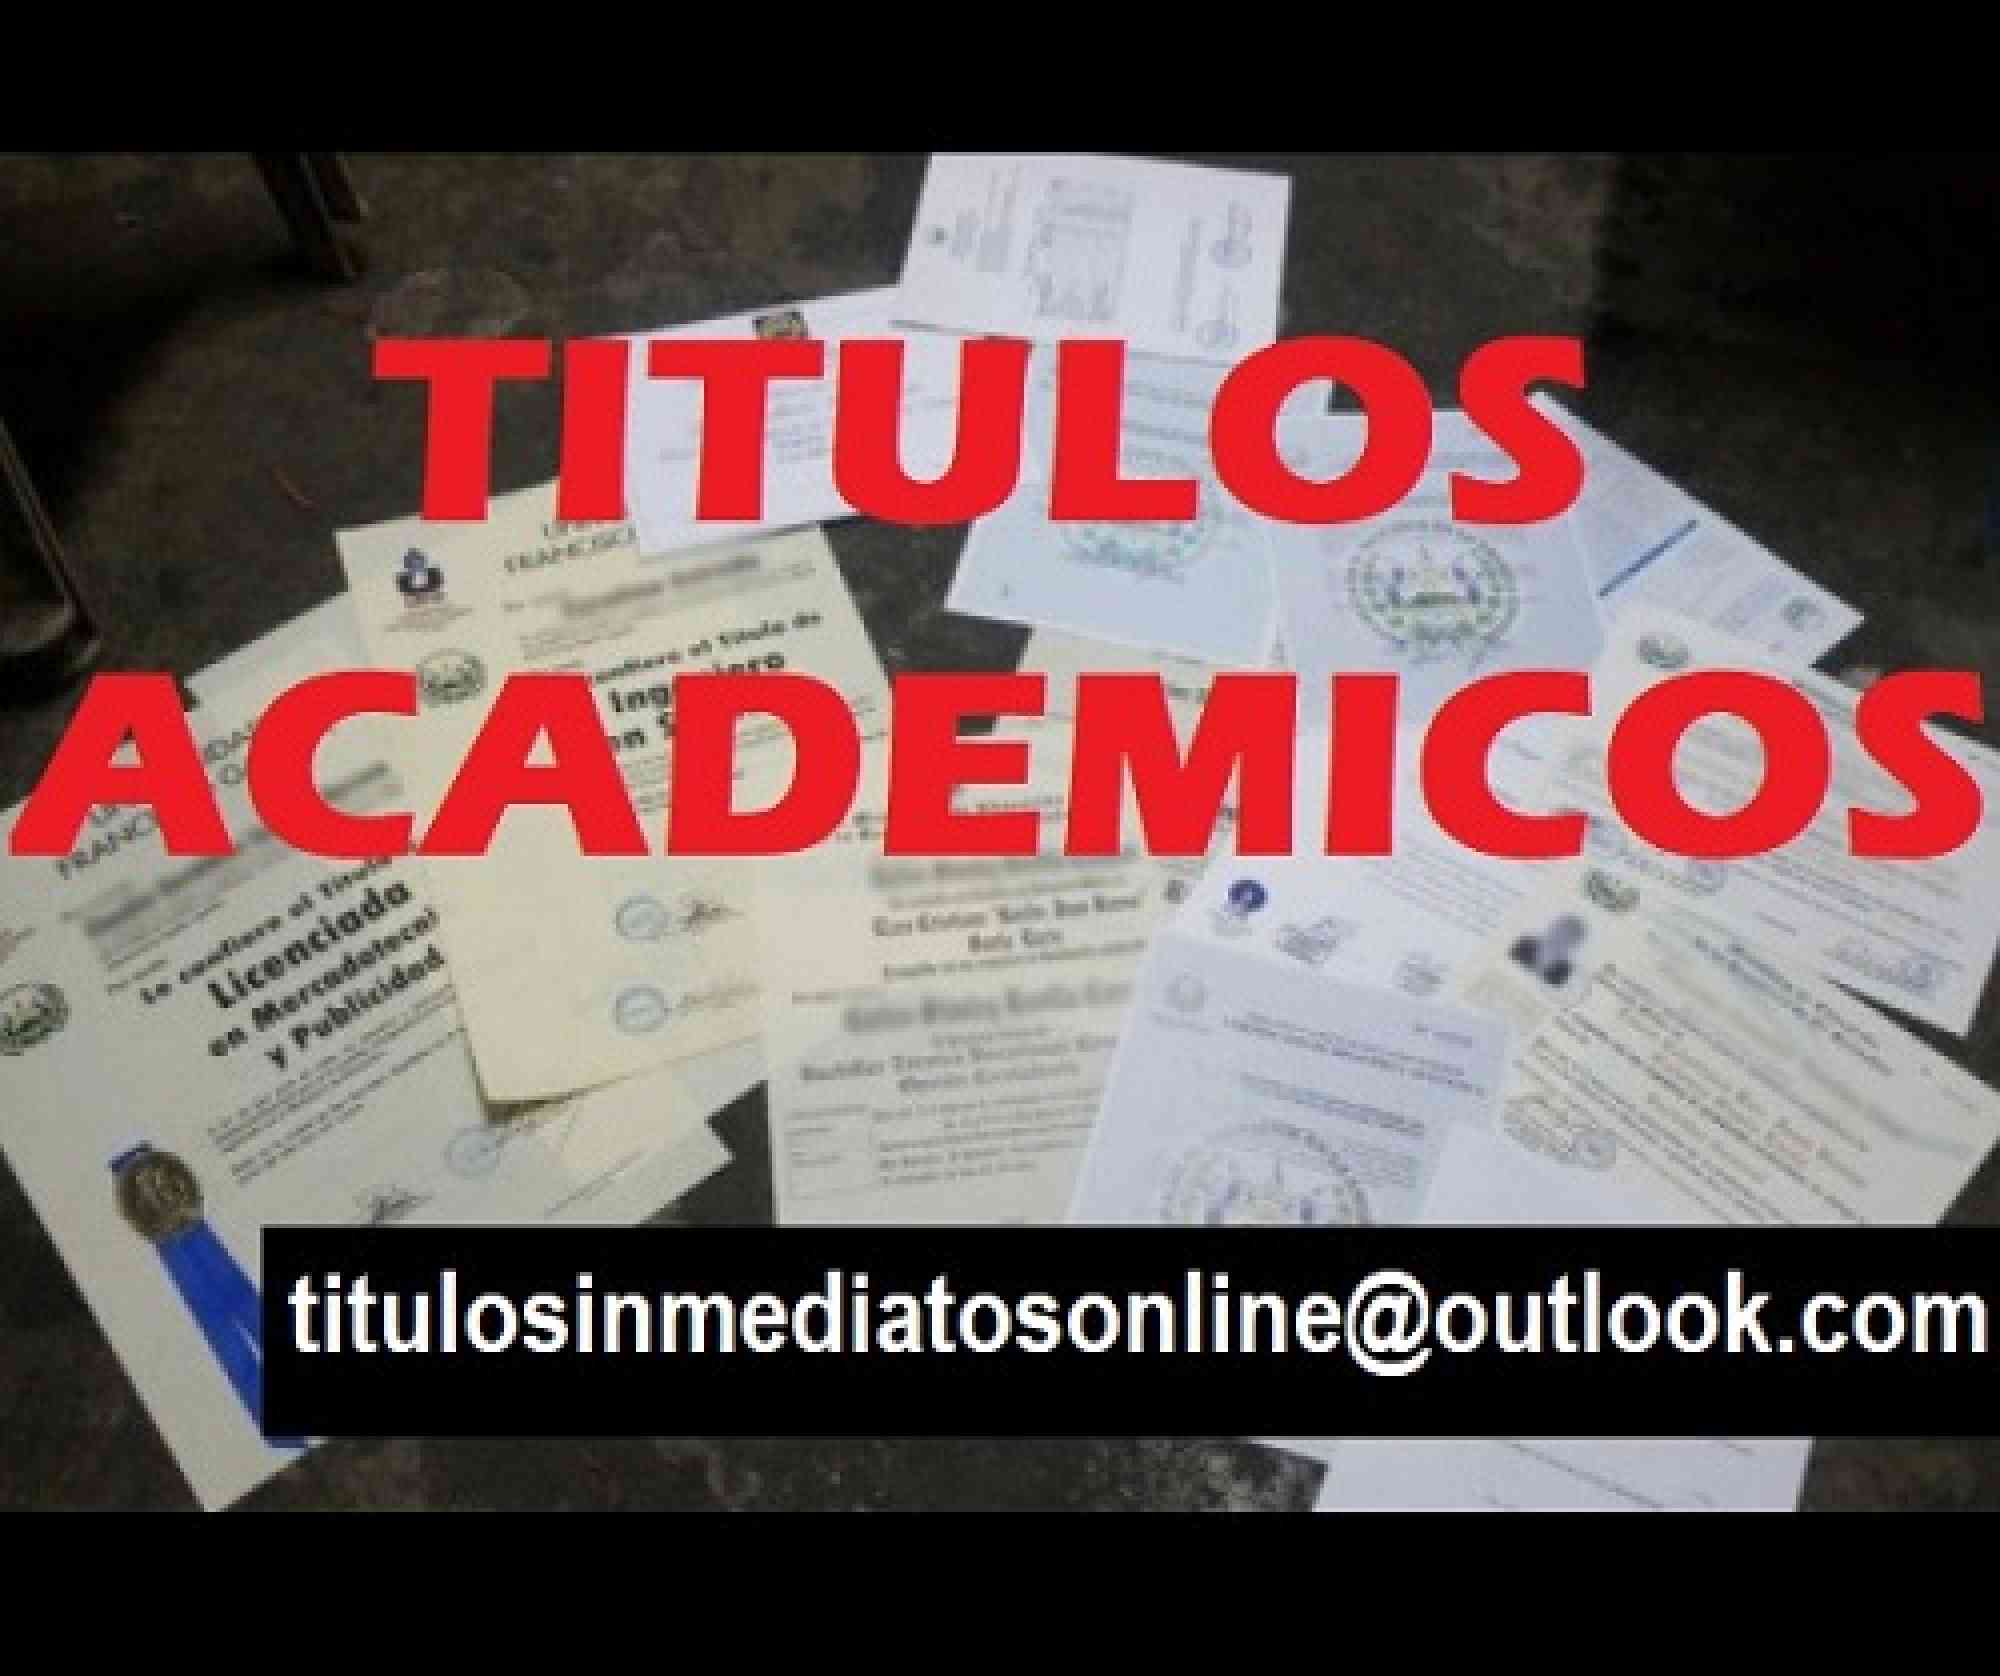 Titulos academicos inmediatos registrados